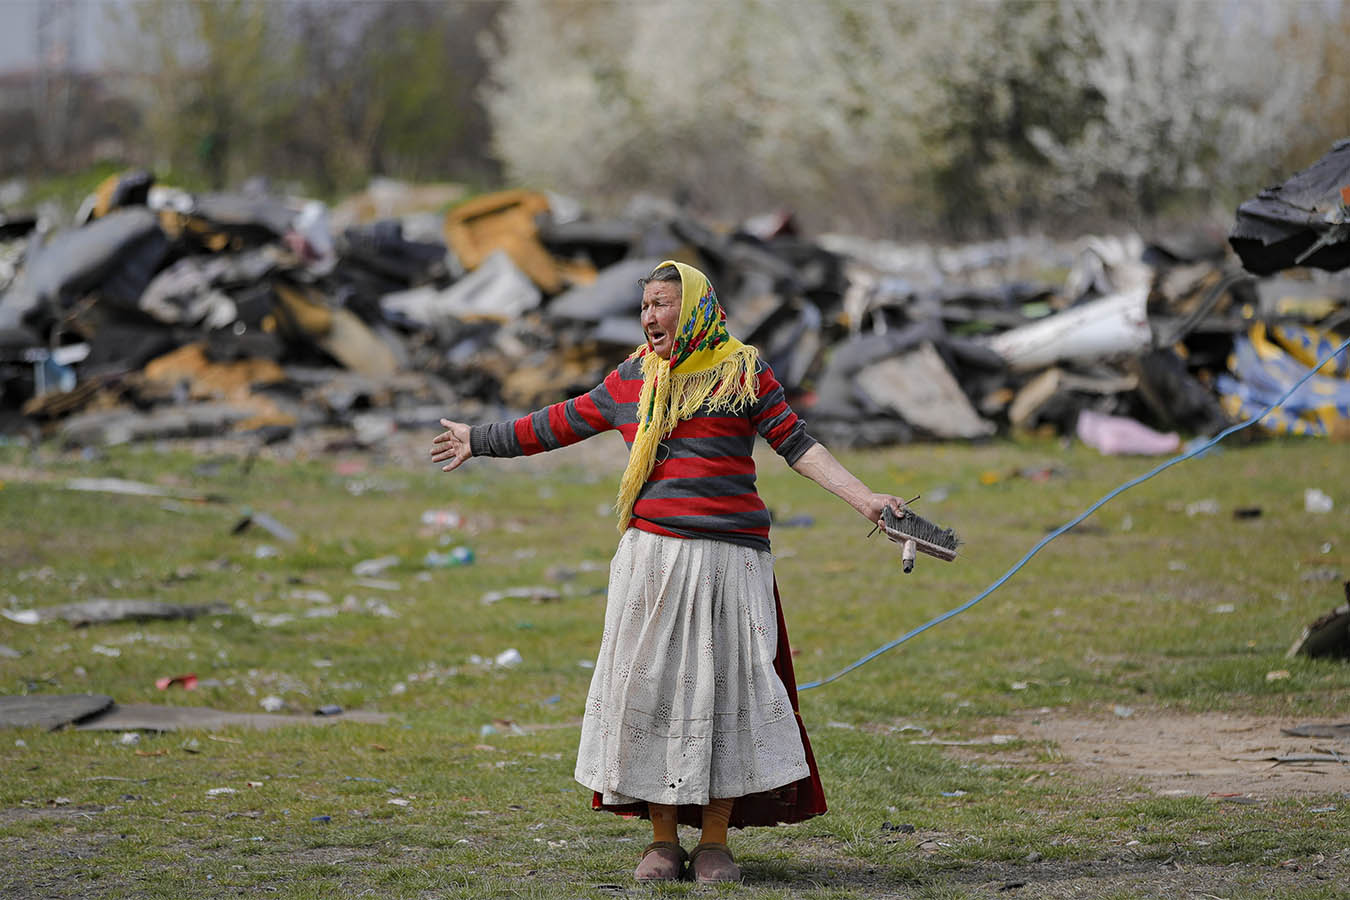 אישה במהלך פשיטה של המשמר הסביבתי בוידרה, רומניה, ה-13 באפריל 2021. אנשים רבים מתקיימים בצורה מסוכנת ובלתי חוקית על ידי הצתה של דברים המכילים מתכת כמו מחשבים, צמיגים וכבלים חשמליים (AP Photo/Vadim Ghirda)